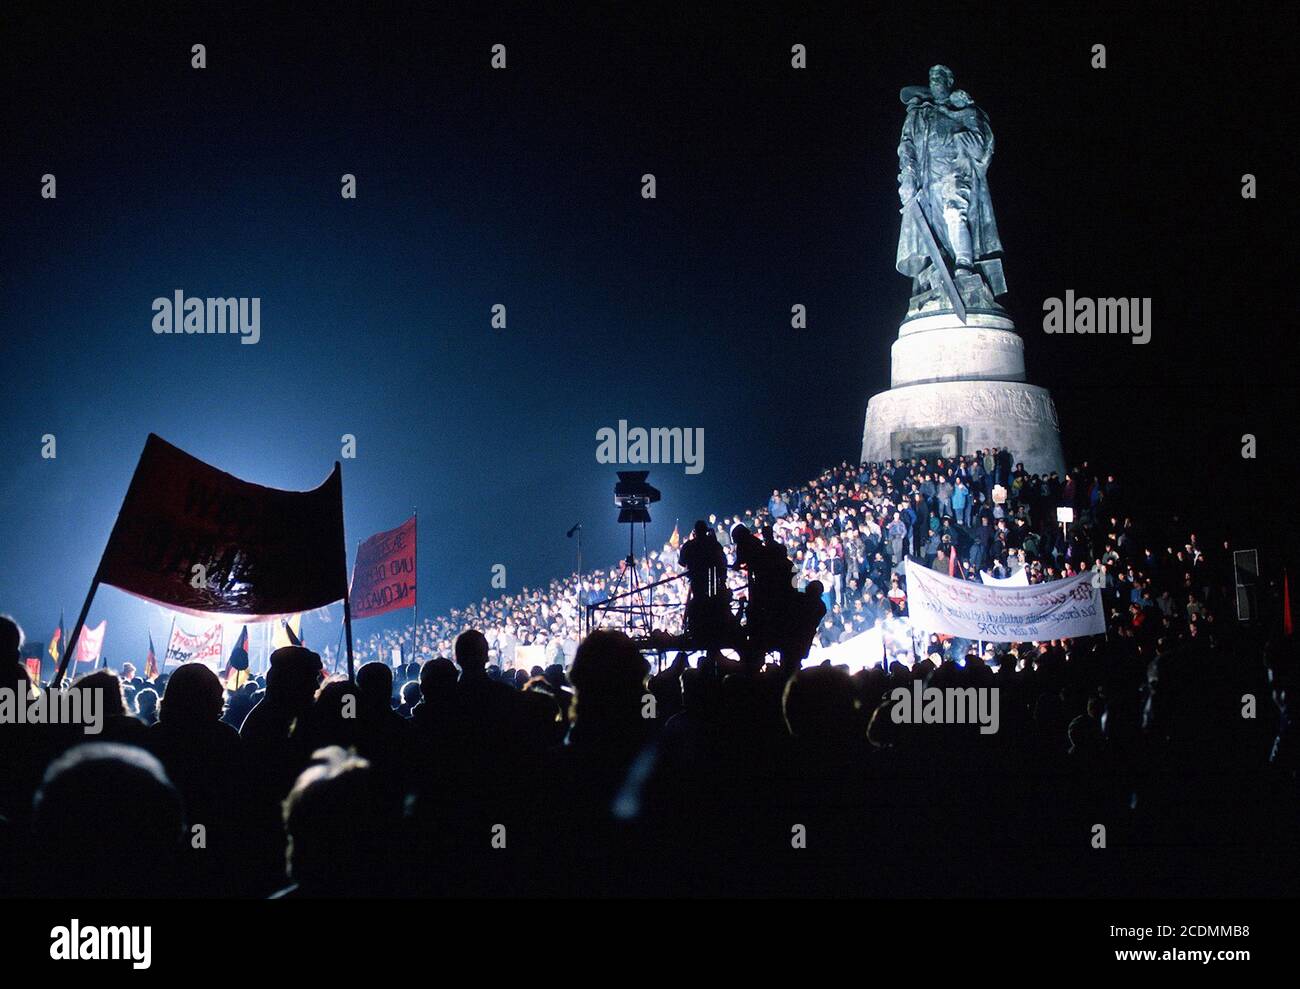 Manifestation contre le néo-nazisme dans la RDA devant le Mémorial soviétique de Treptow, peu après la chute du mur, 1990, Berlin, Allemagne Banque D'Images